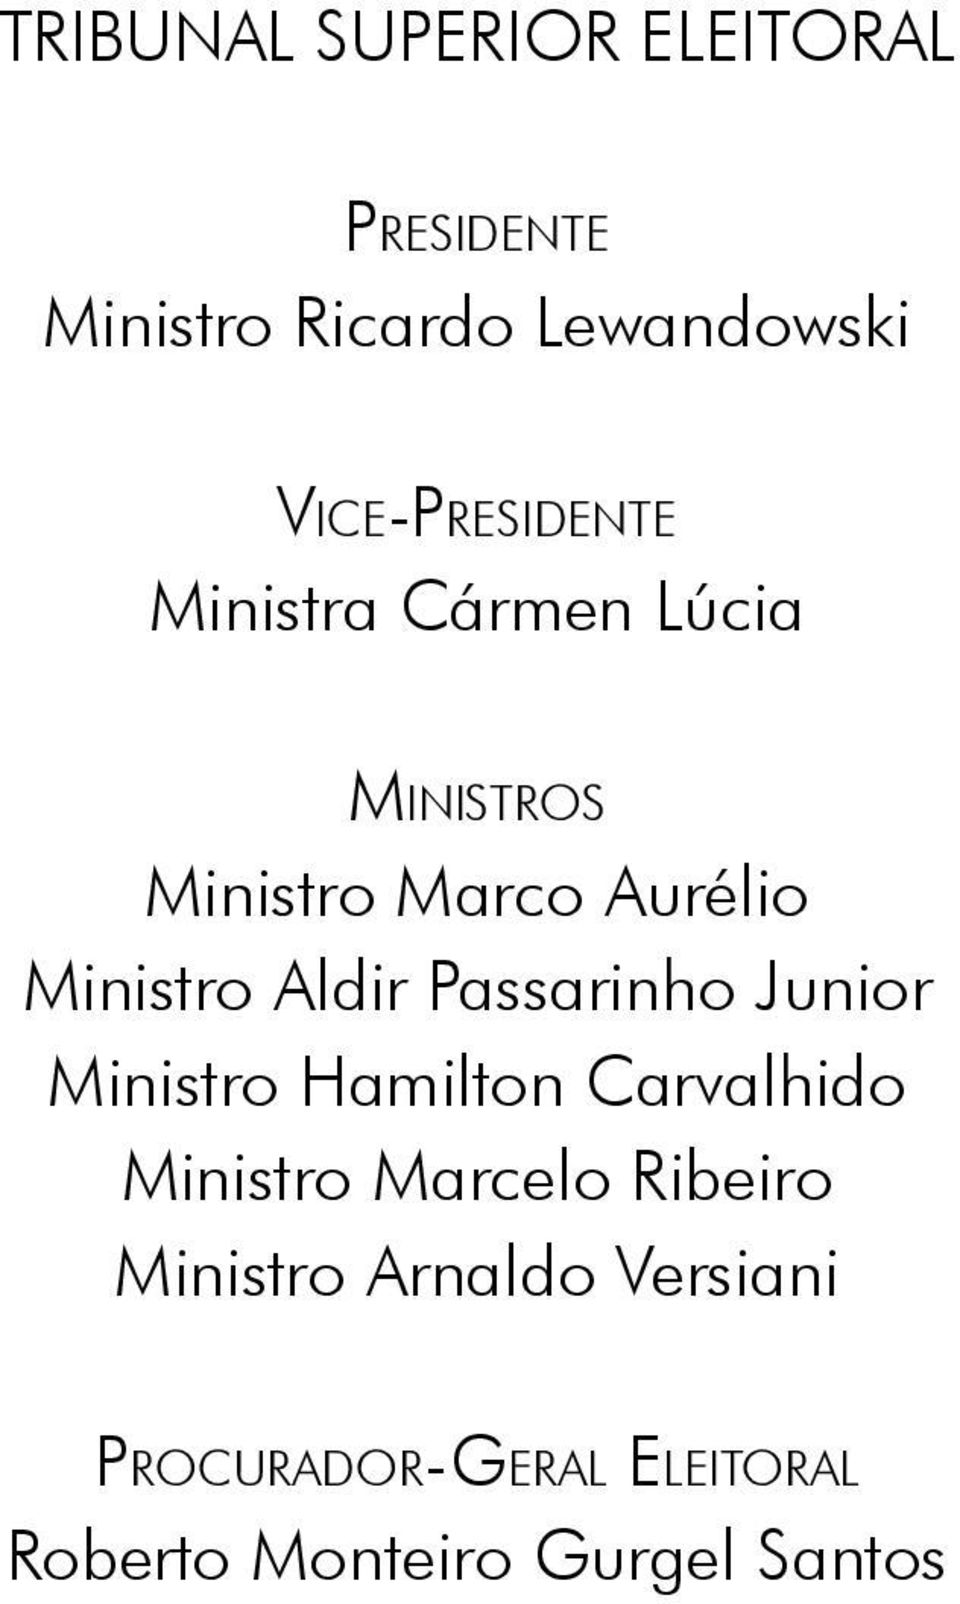 Ministro Aldir Passarinho Junior Ministro Hamilton Carvalhido Ministro